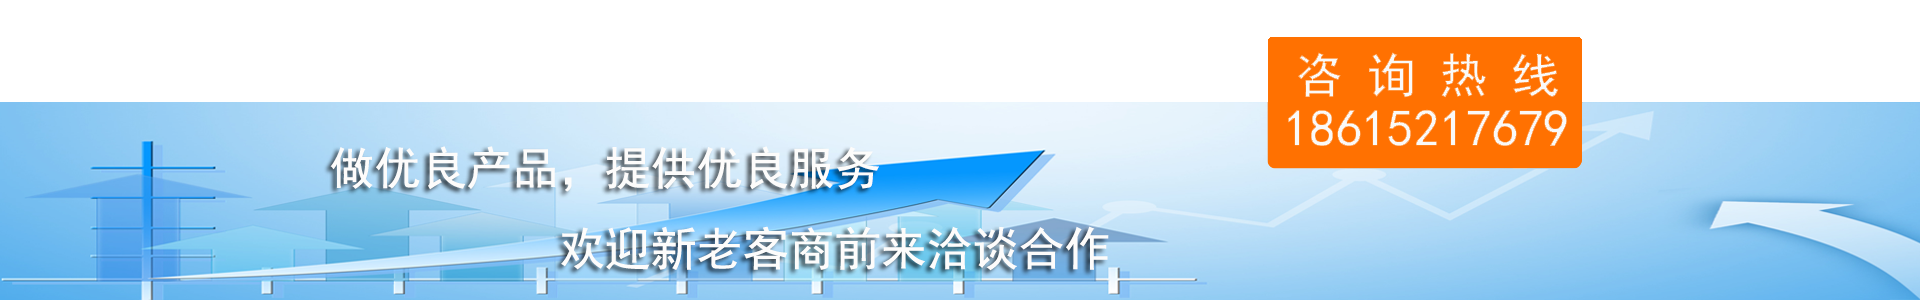 龙8体育（中国）官方网站做优质产品,提供优质服务,欢迎新老商家前来洽谈合作,咨询热线18615217679